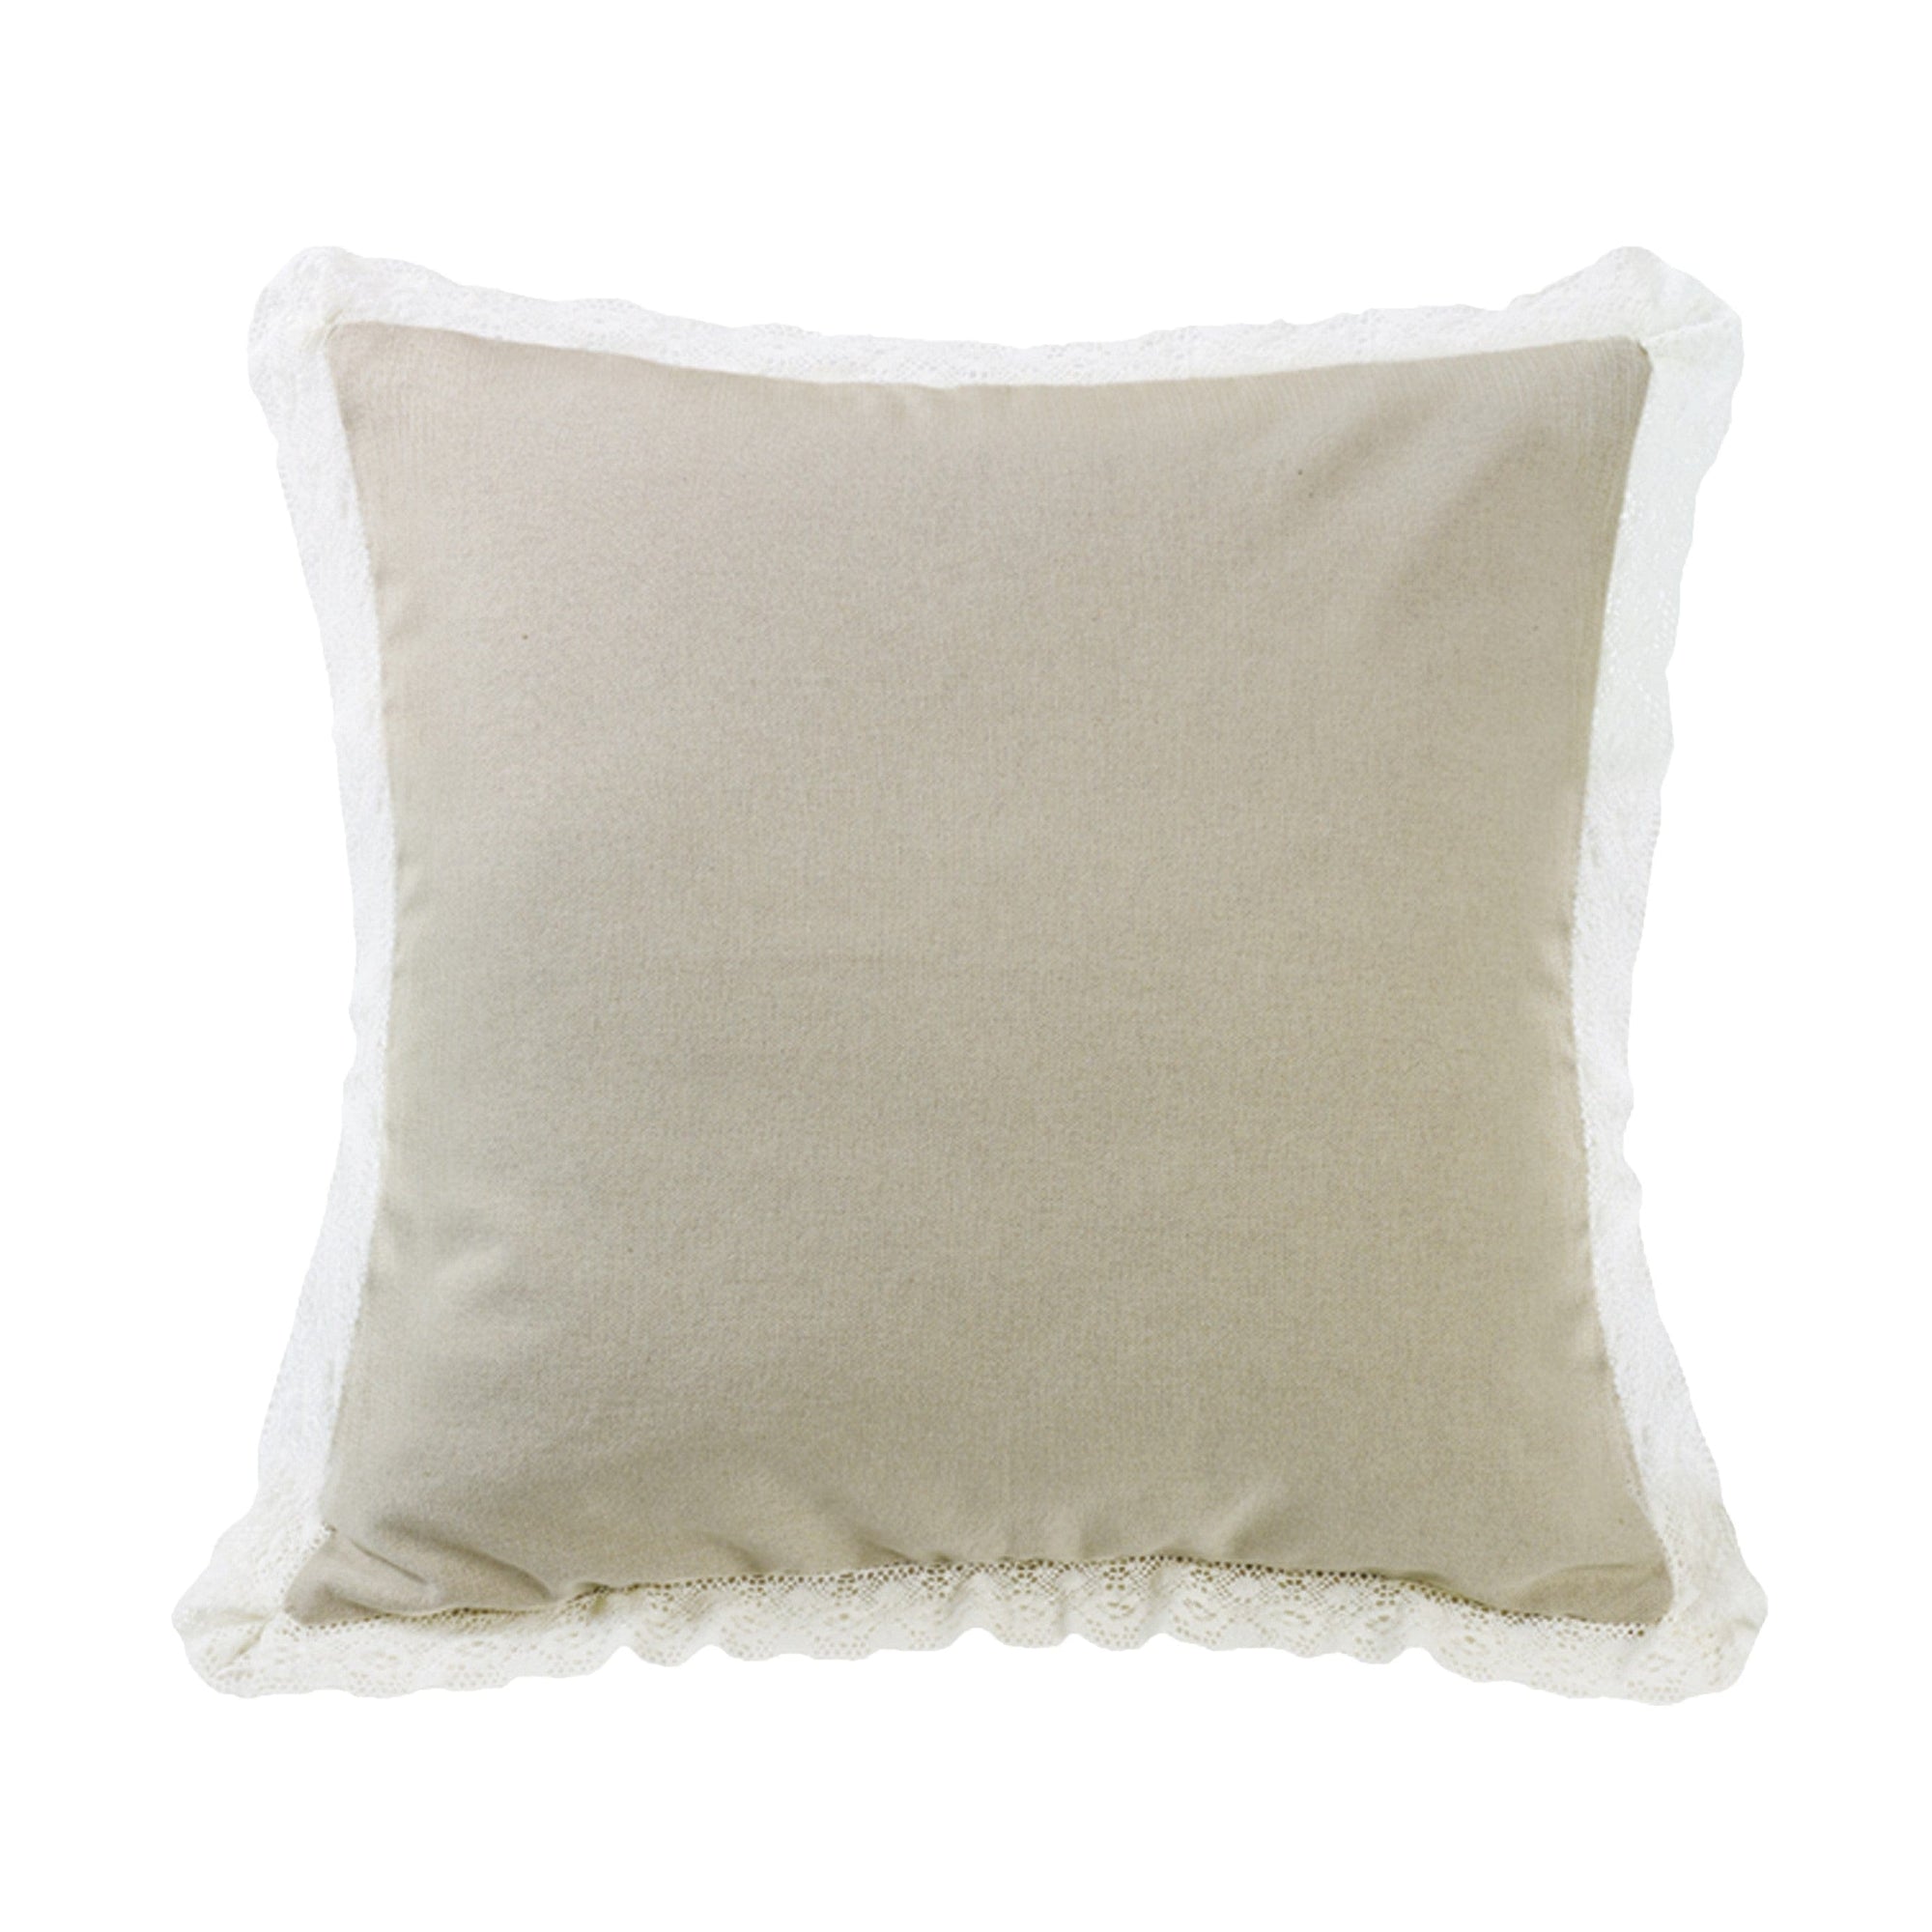 18x18 Metallic Embroidered Diamond Square Throw Pillow White